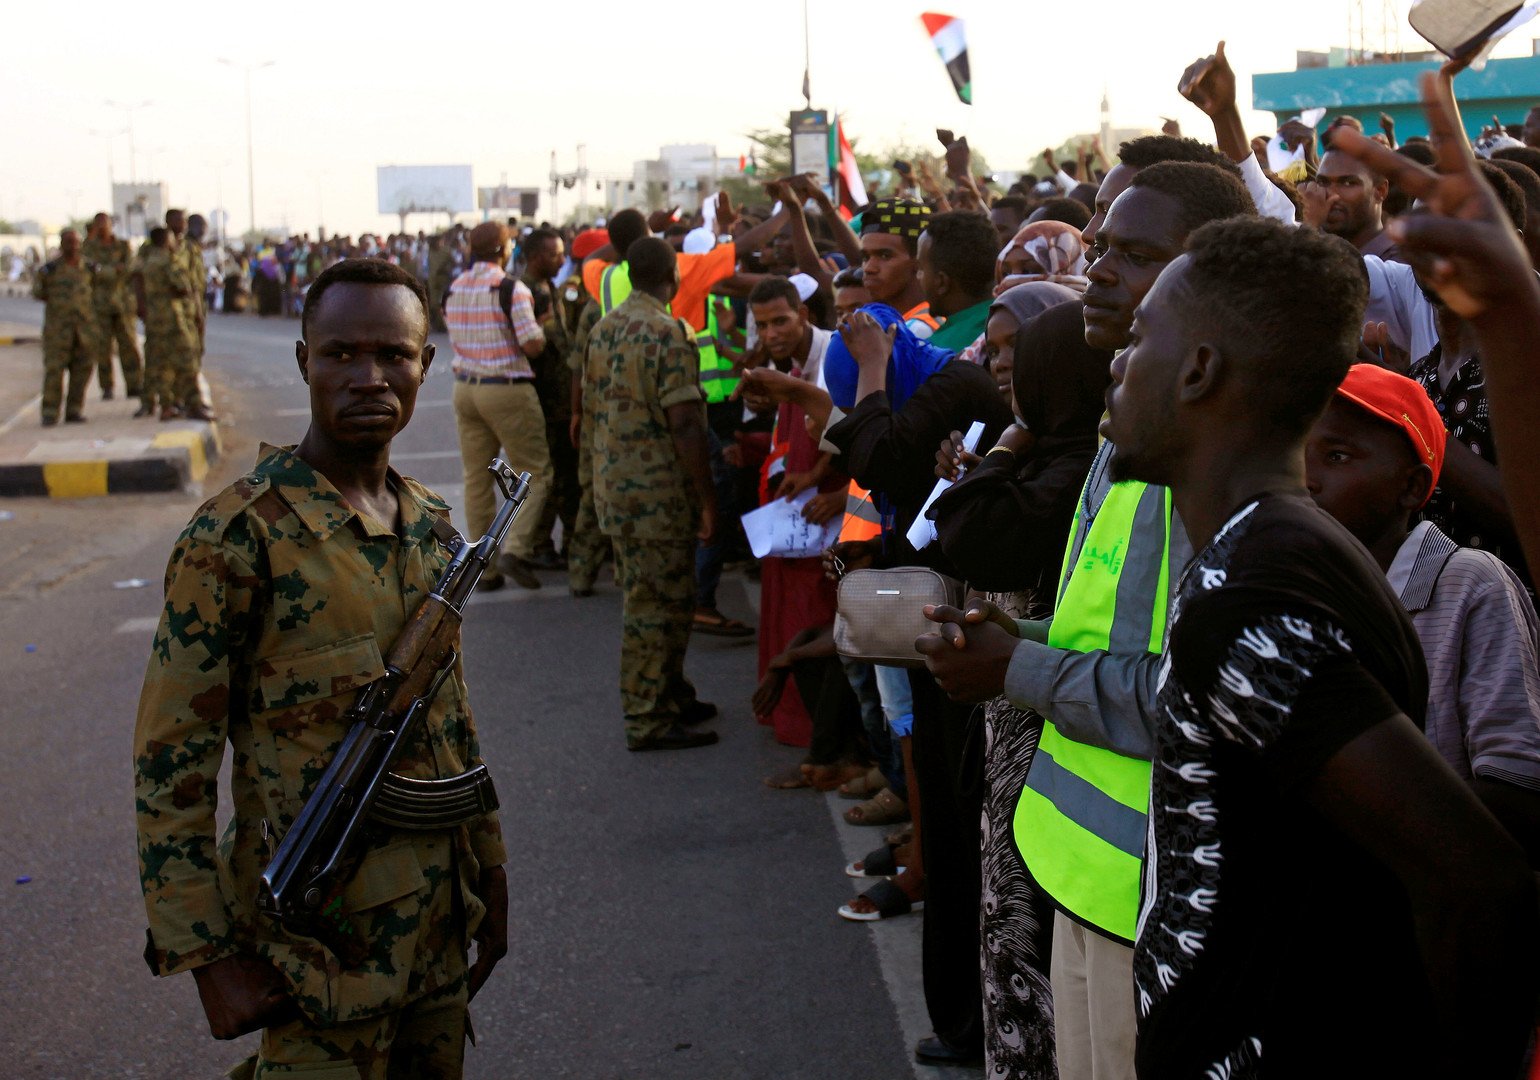 السودان.. انتهاء جولة جديدة من المفاوضات بين الجيش وقوى التغيير دون اتفاق نهائي